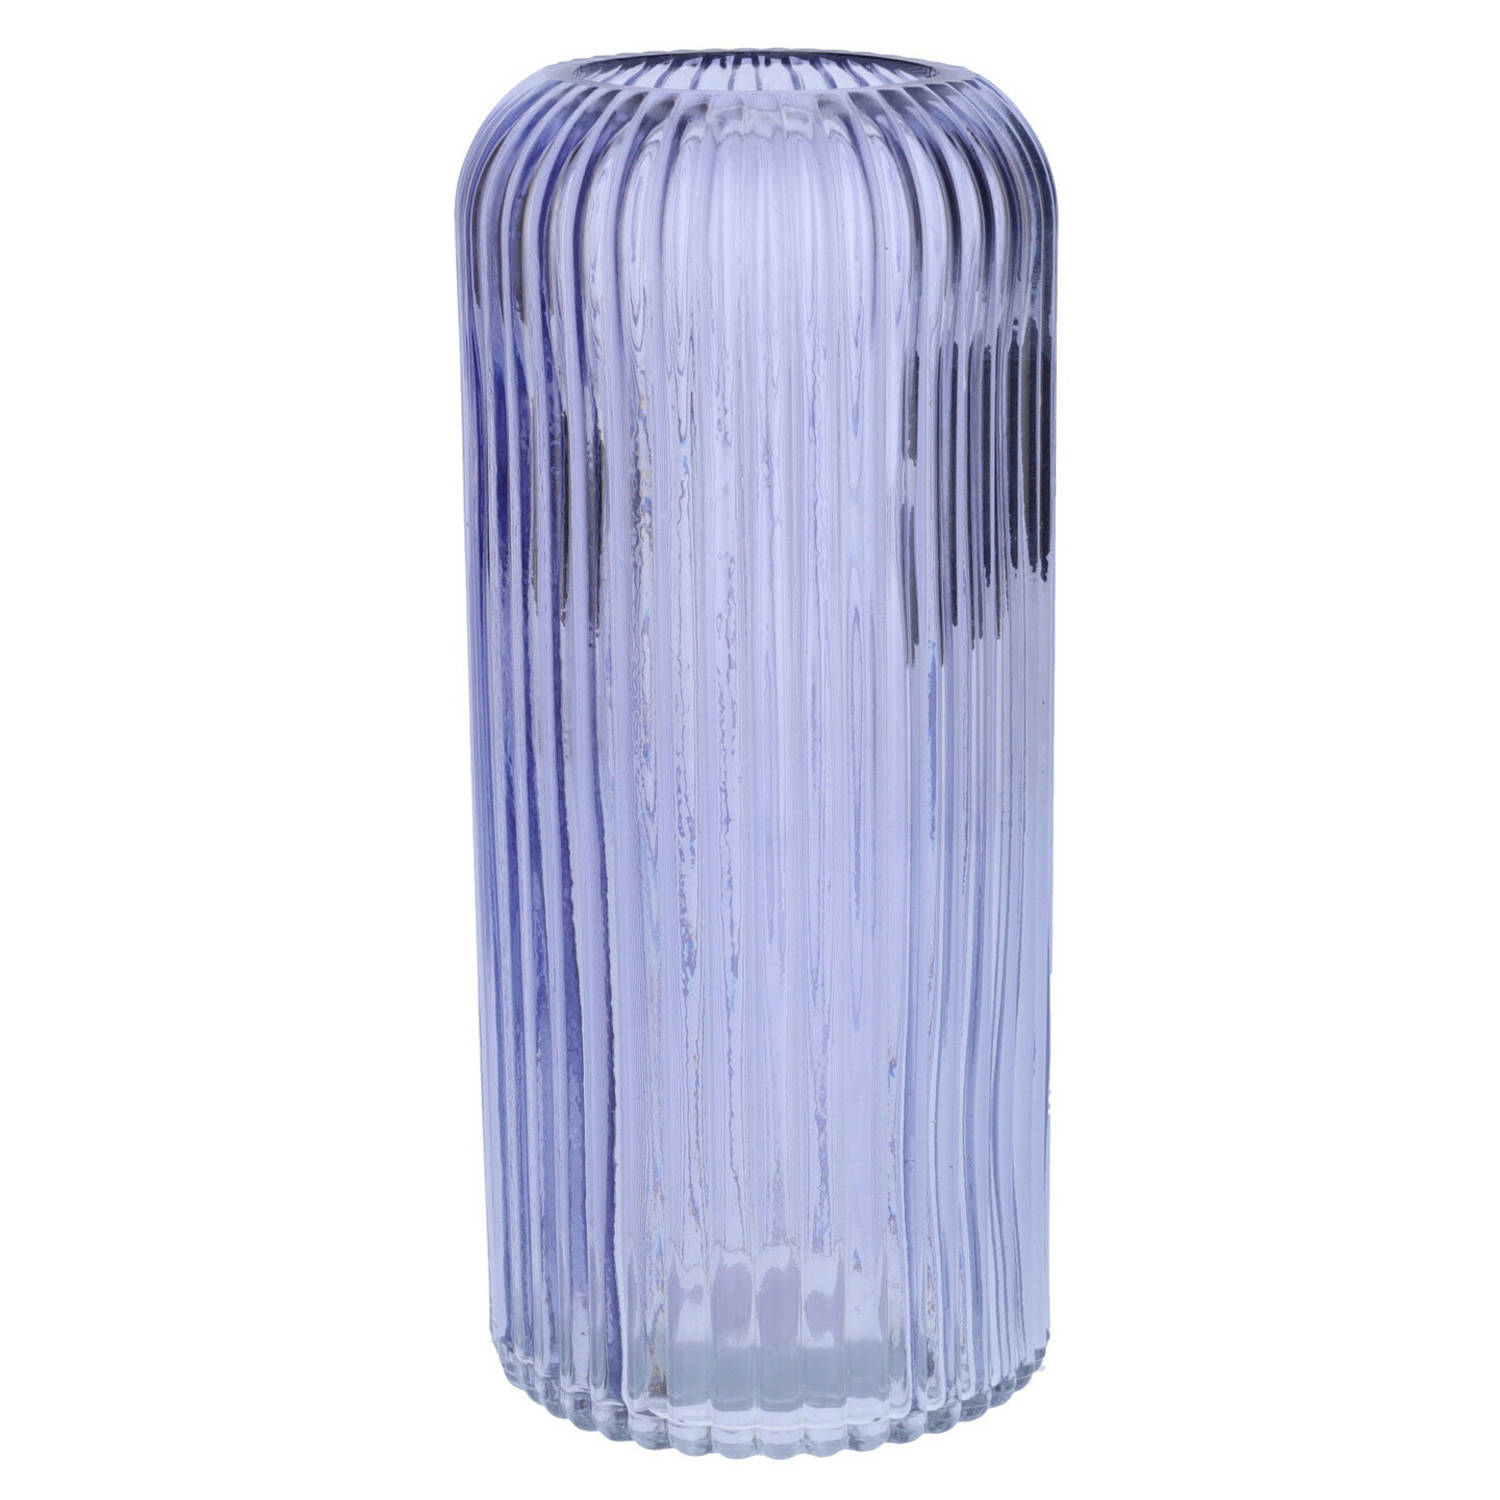 Bloemenvaas Lavendel Transparant Glas D9 X H20 Cm Vazen